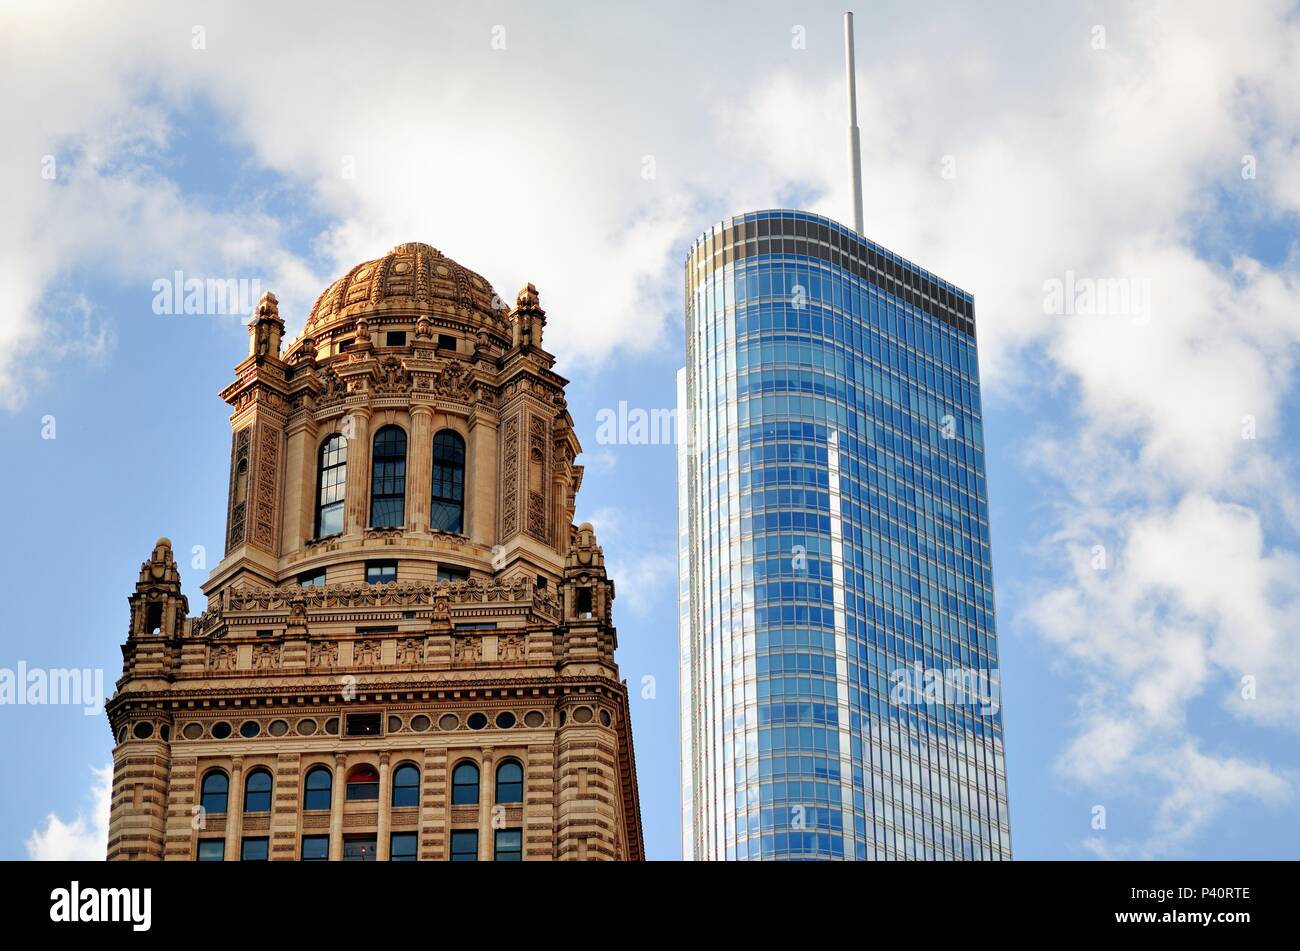 Chicago, Illinois, USA. Die Spitzen von zwei gegensätzliche architektonische Stile und Epochen in Chicago, das seine Vielfalt und Vielfalt der Architektur zeigen. Stockfoto